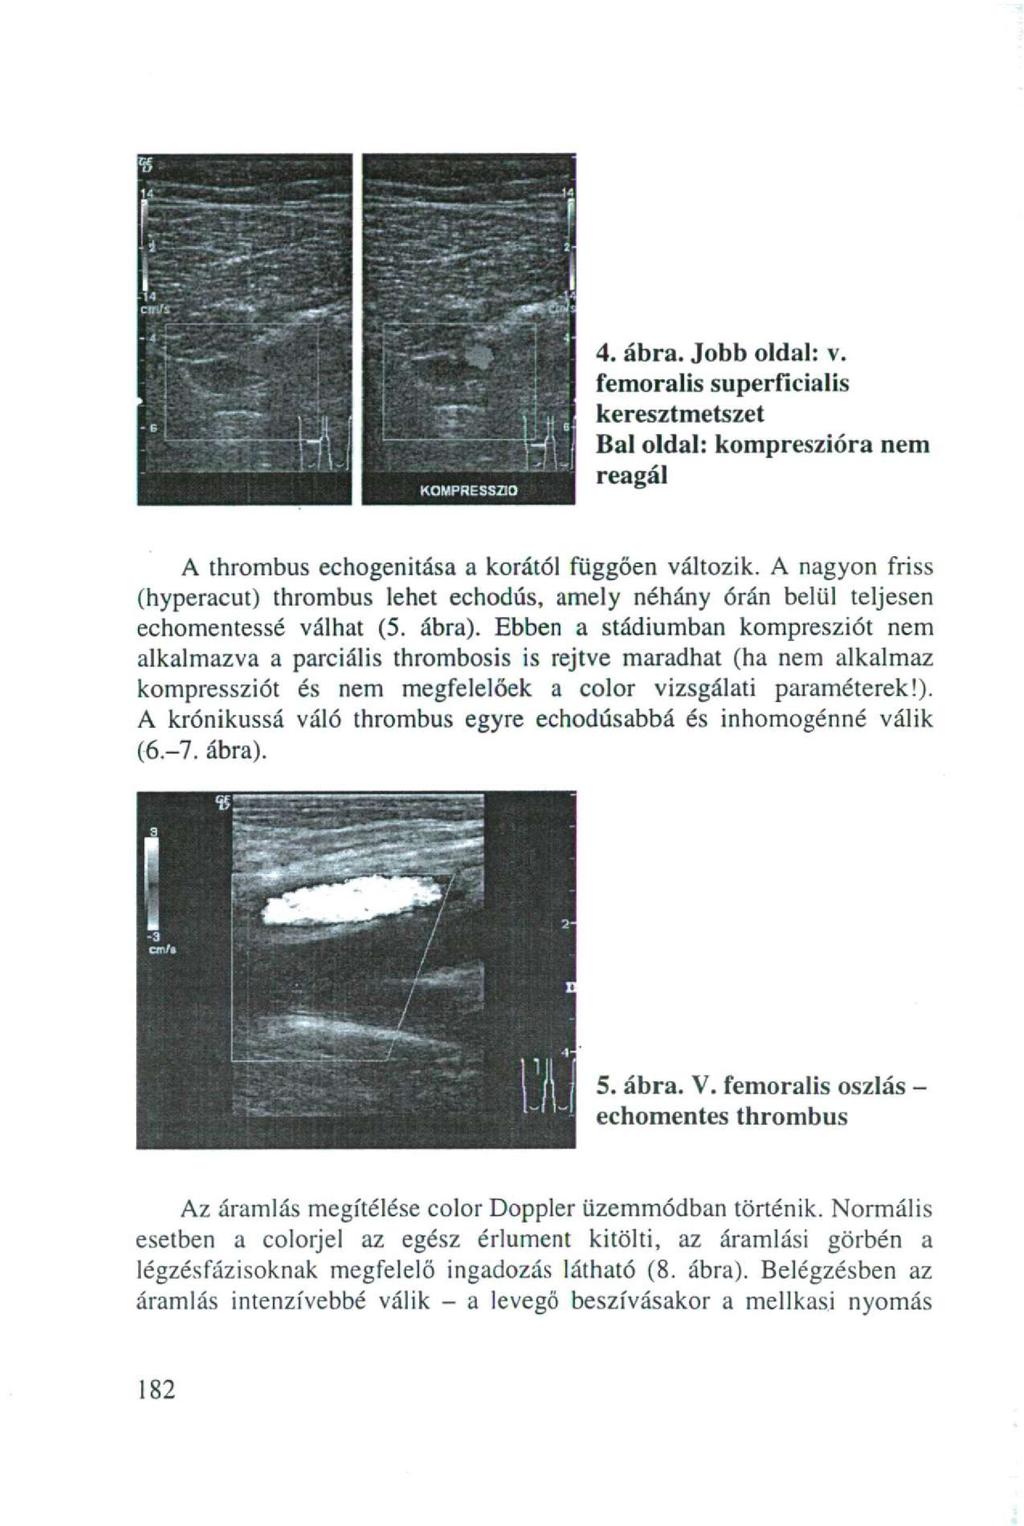 4. ábra. Jobb oldal: v. femoralis superficialis keresztmetszet Bal oldal: kompreszióra nem reagál A thrombus echogenitása a korától függően változik.